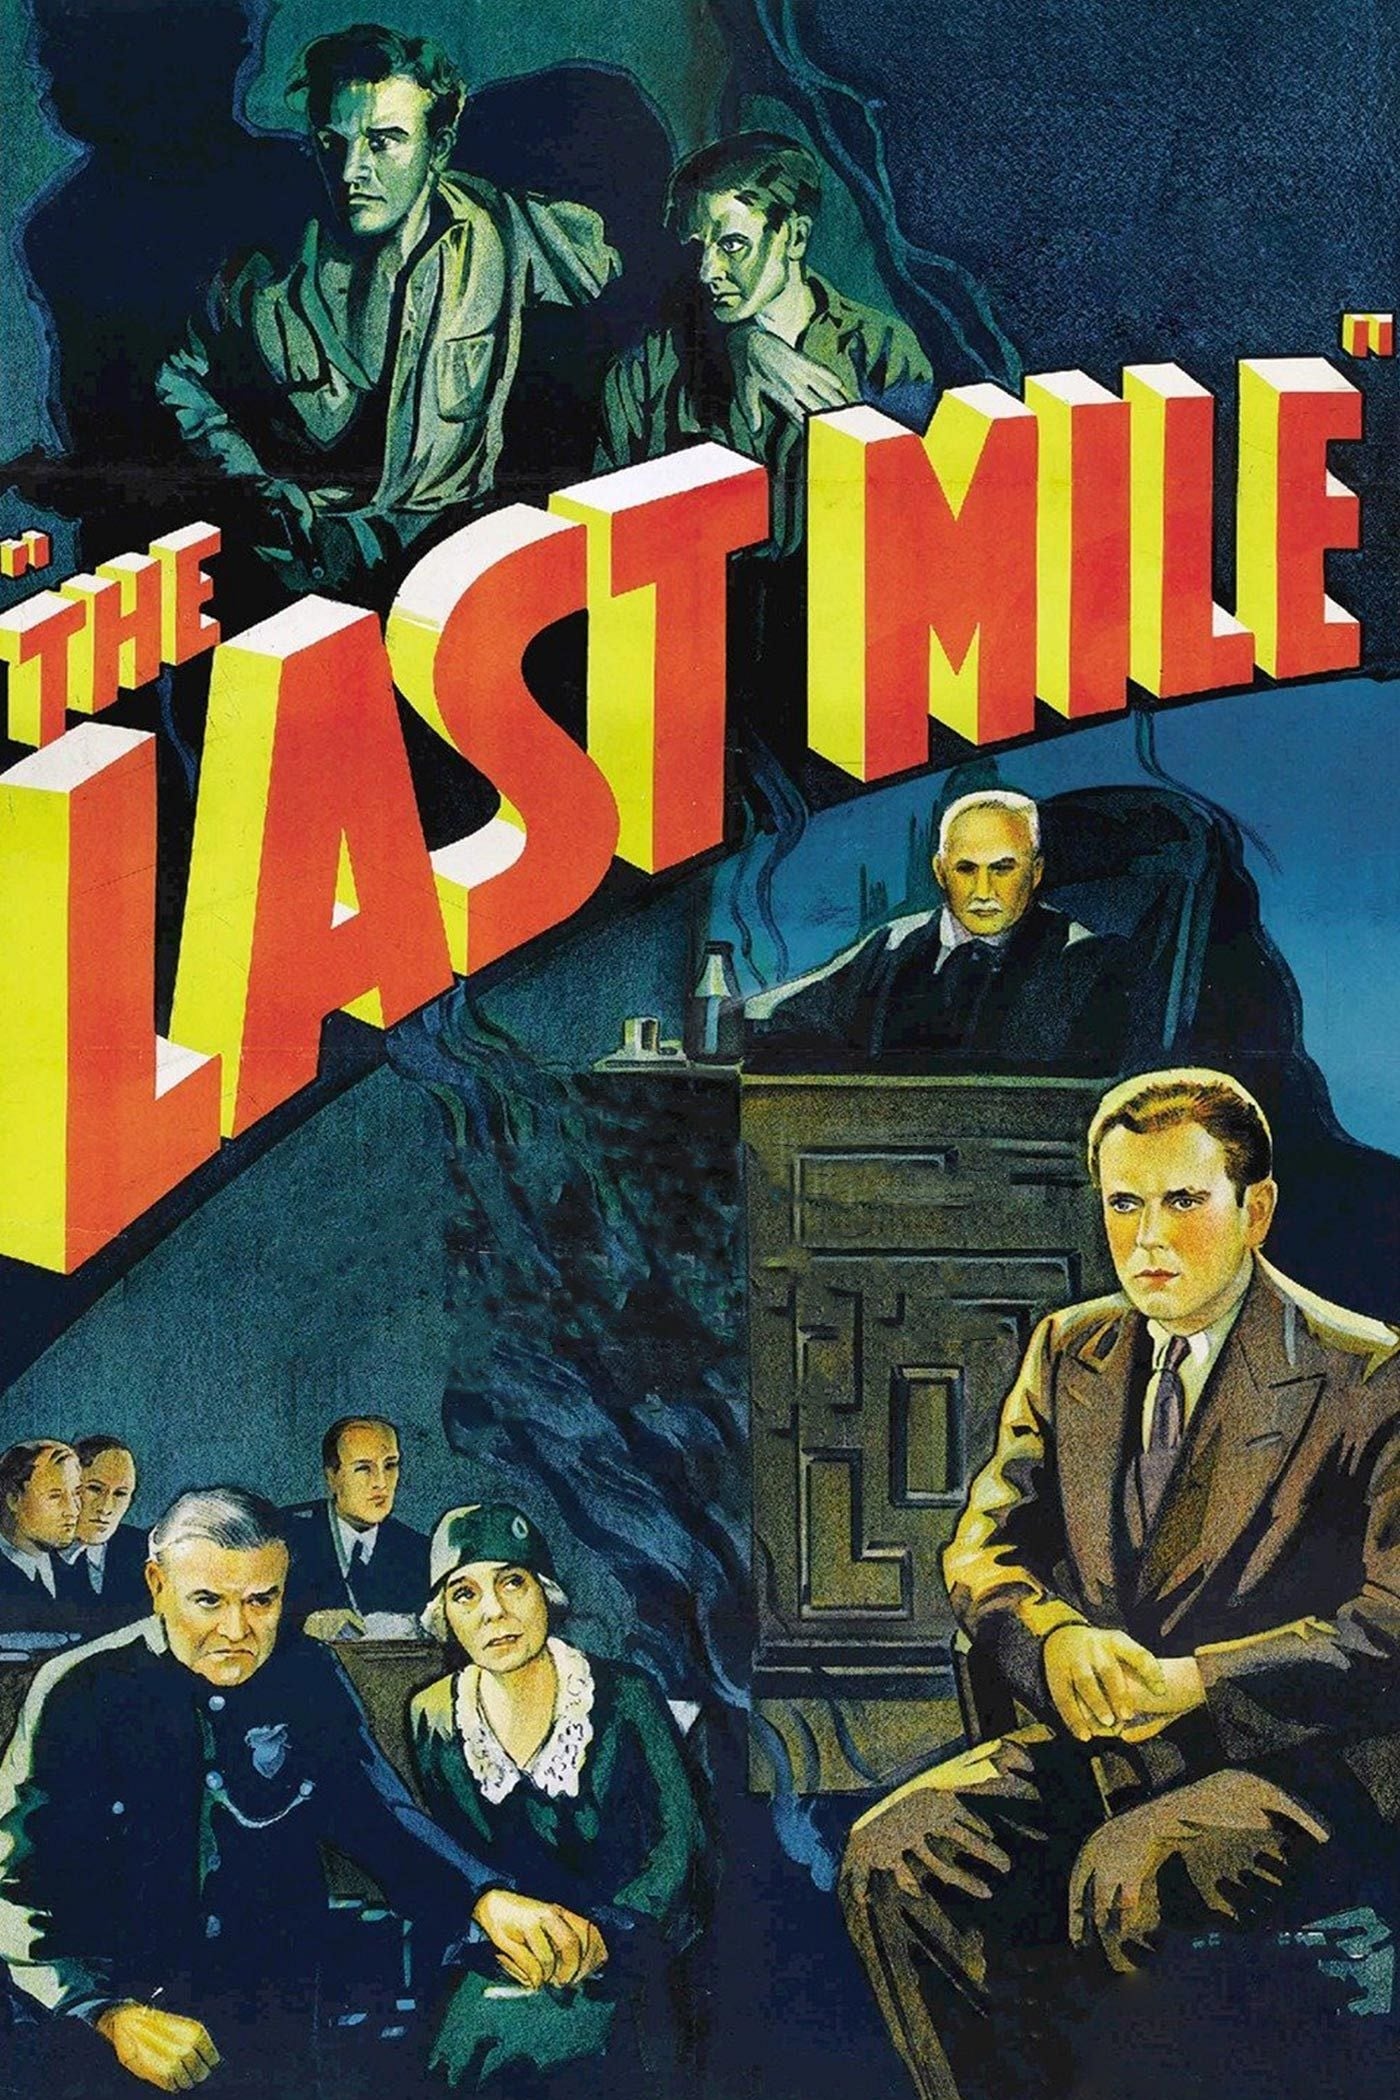 The Last Mile (1932)